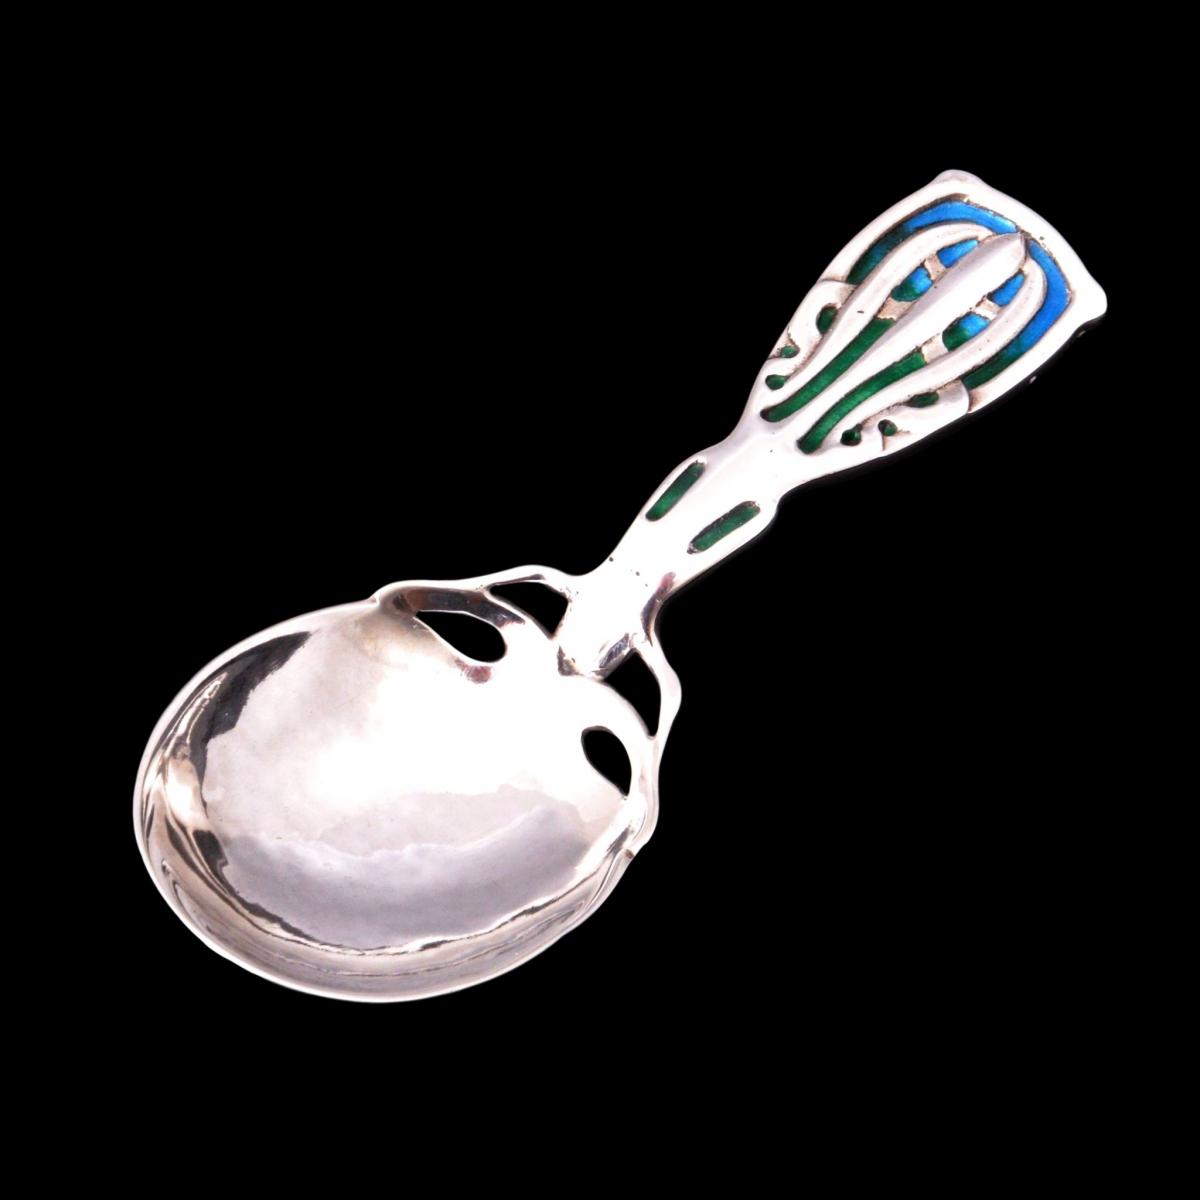 Kate Allen caddy spoon